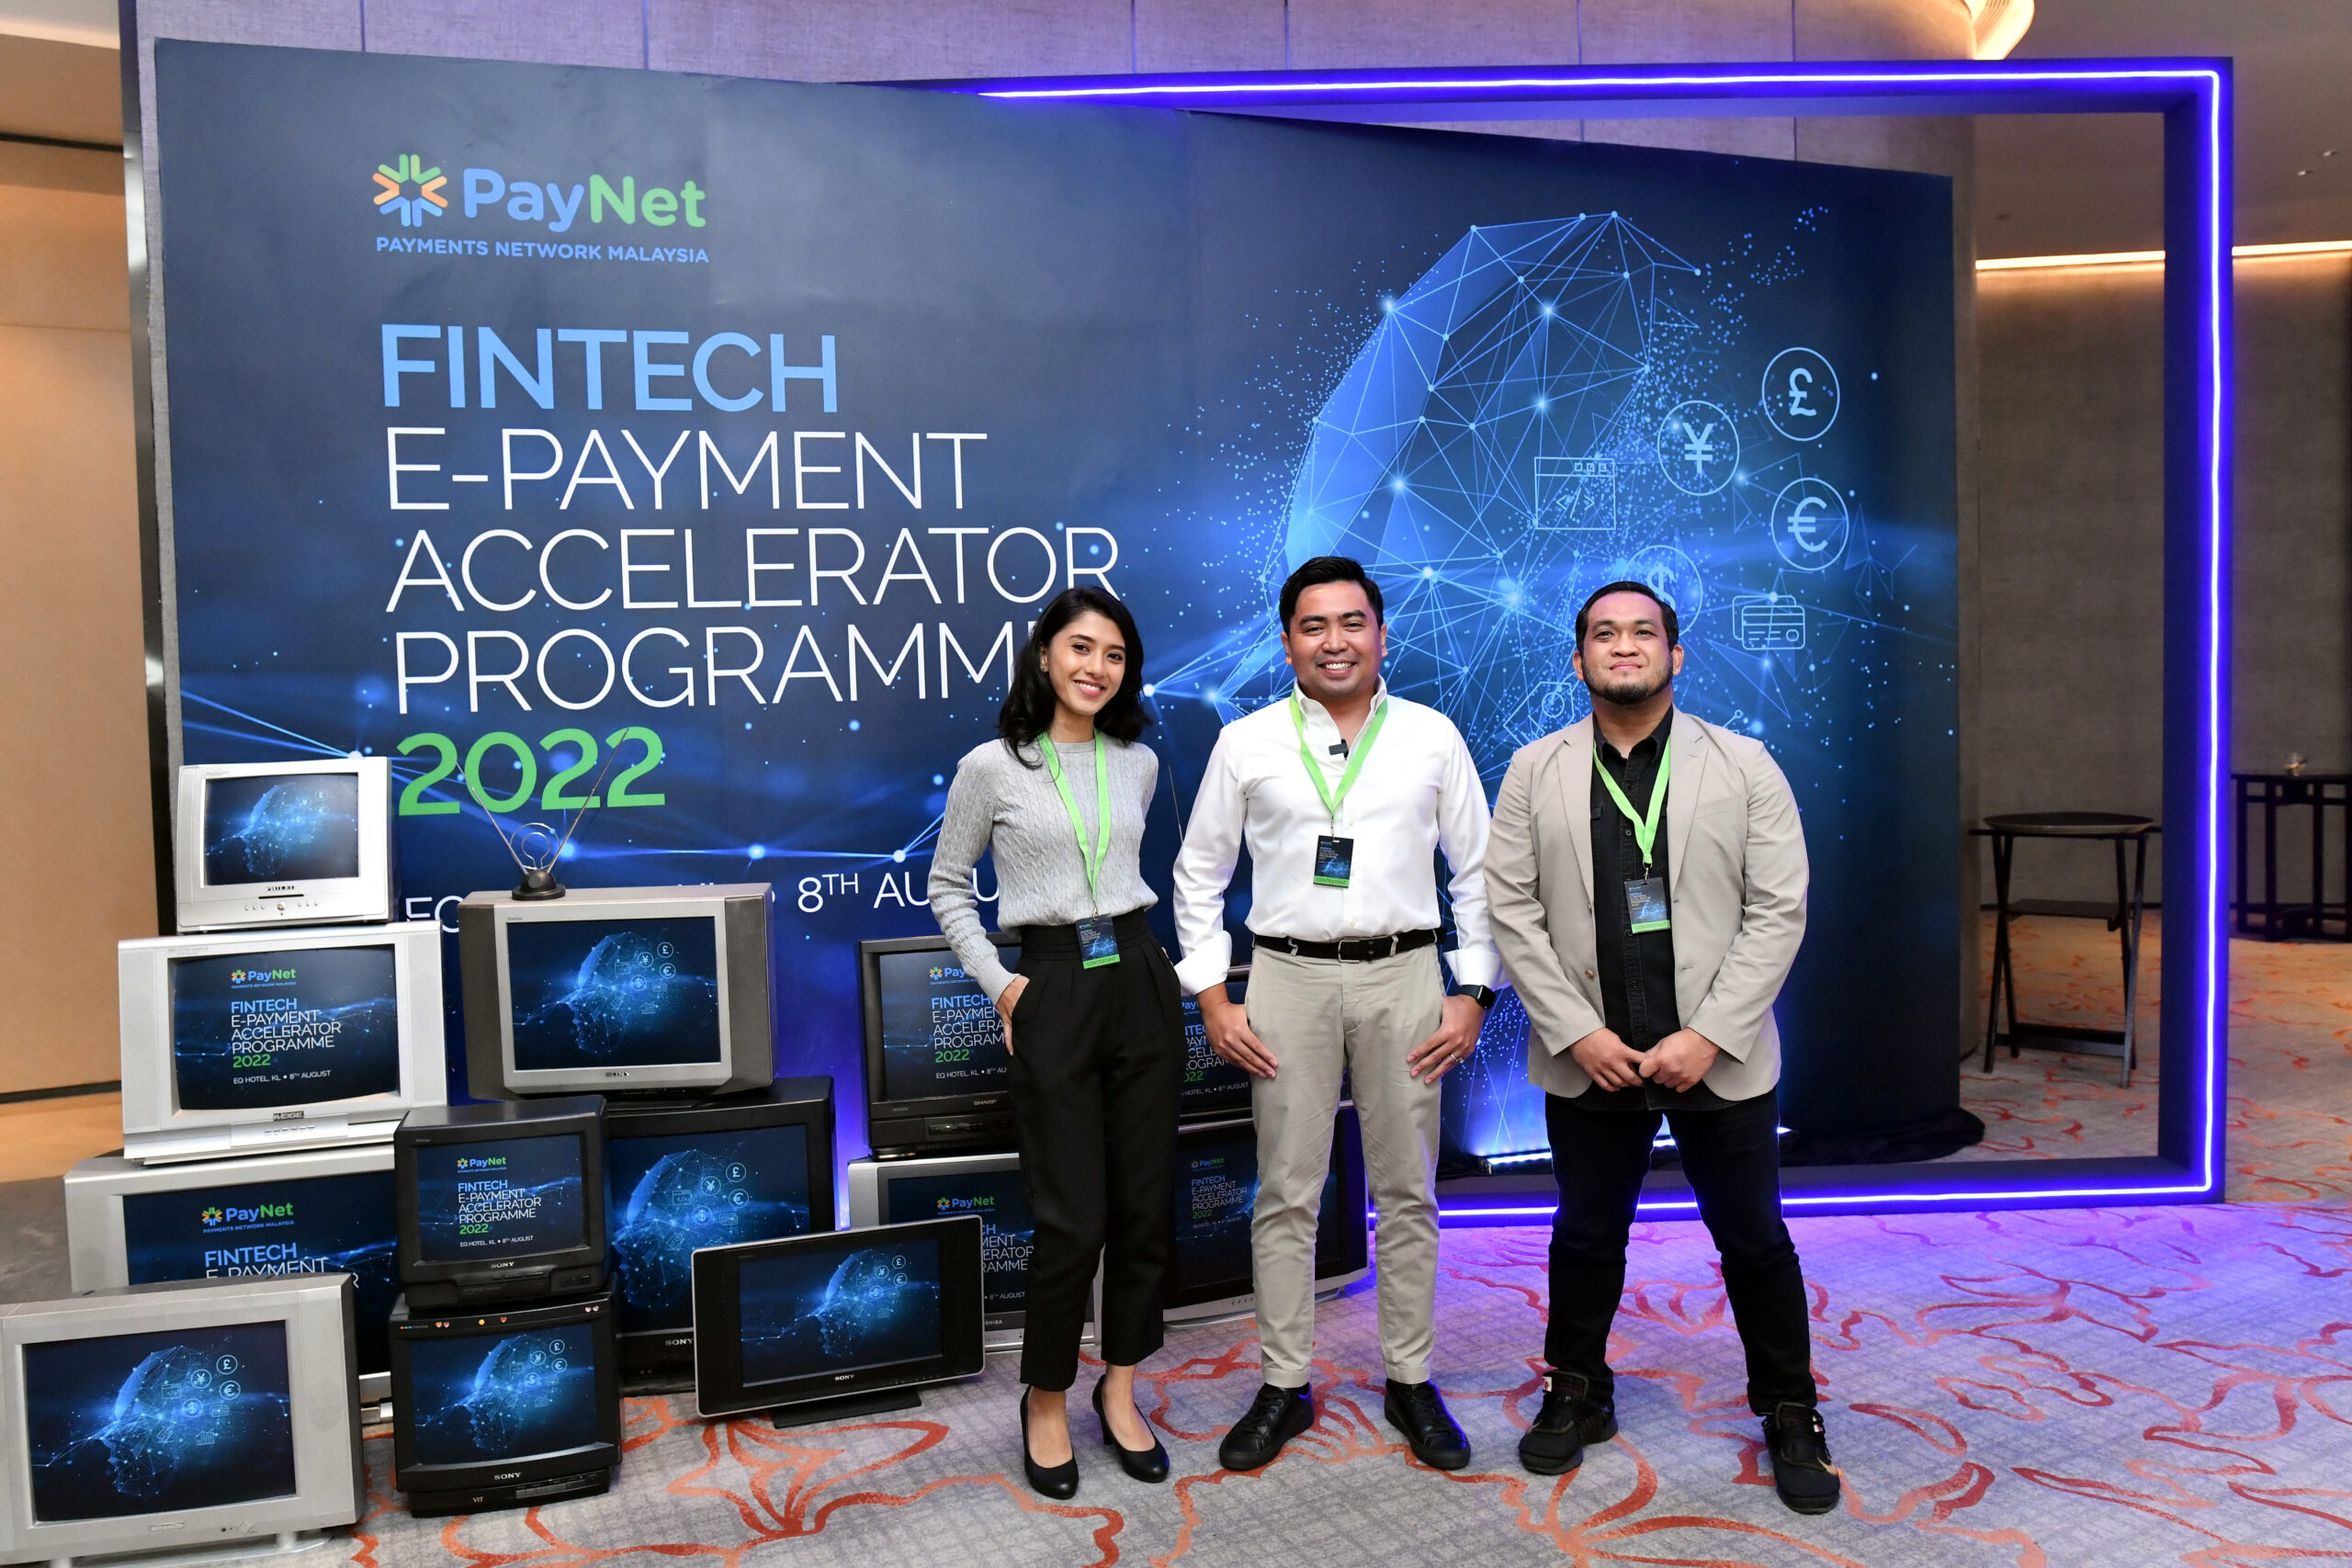 CHIP won the FinTech ePayment Accelerator Programme 2022